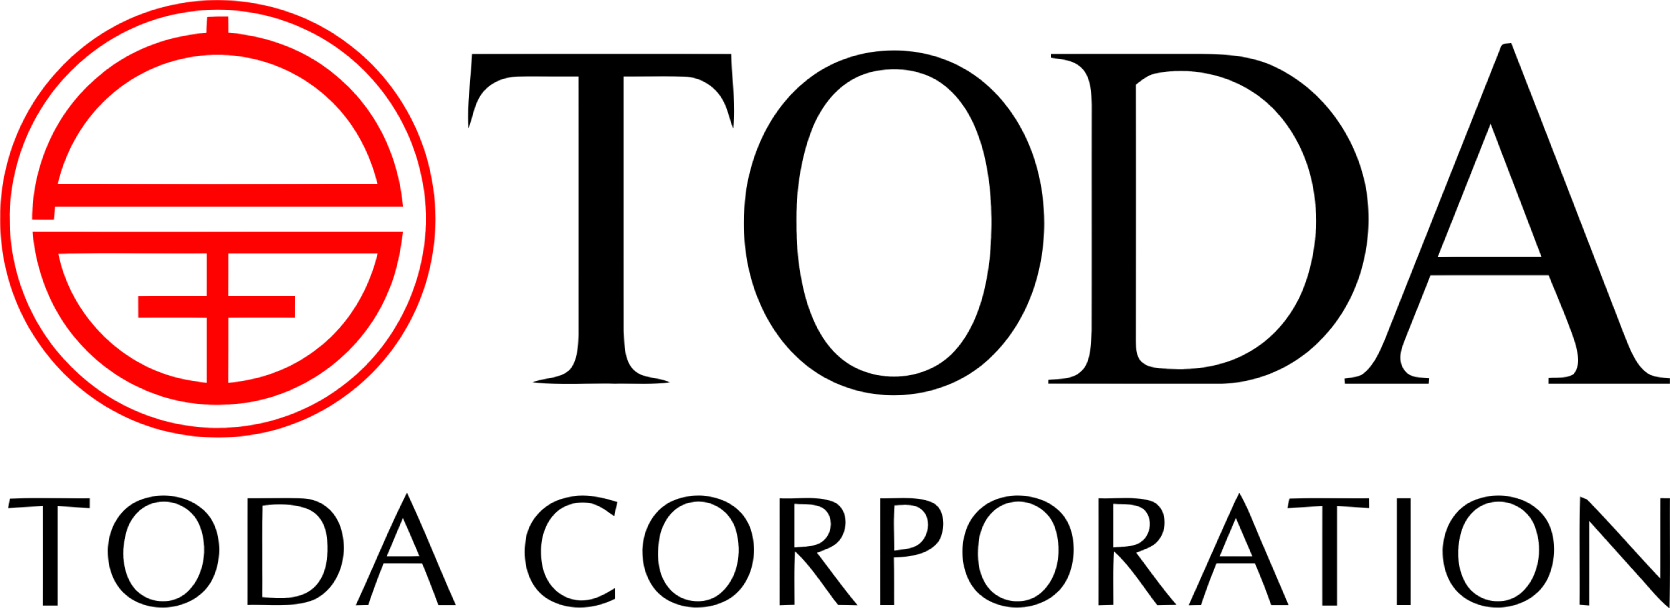 TODA corp logo large (transparent PNG)